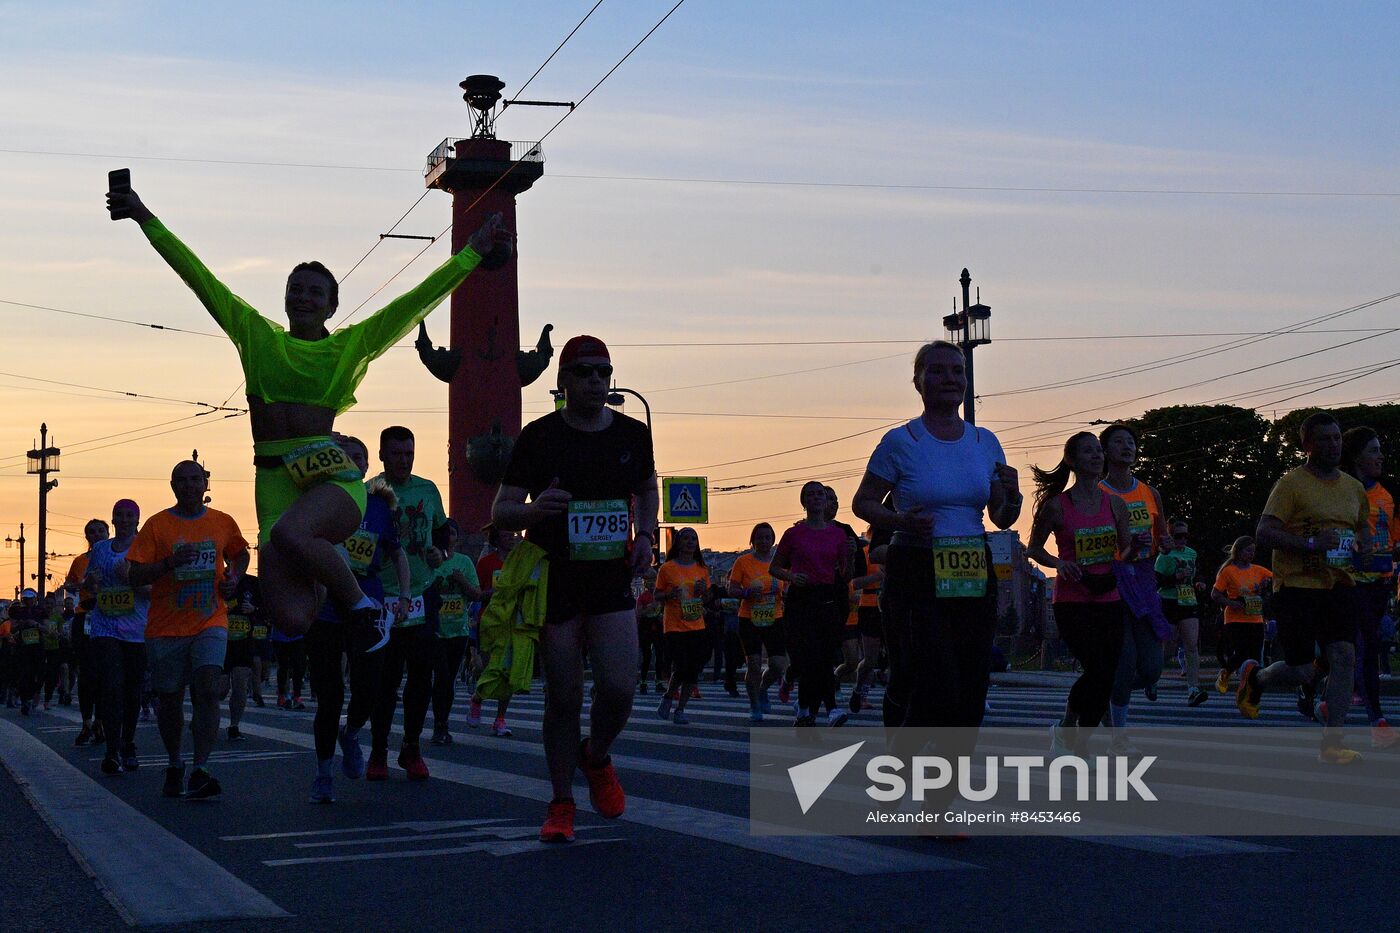 White Nights Marathon in St. Petersburg